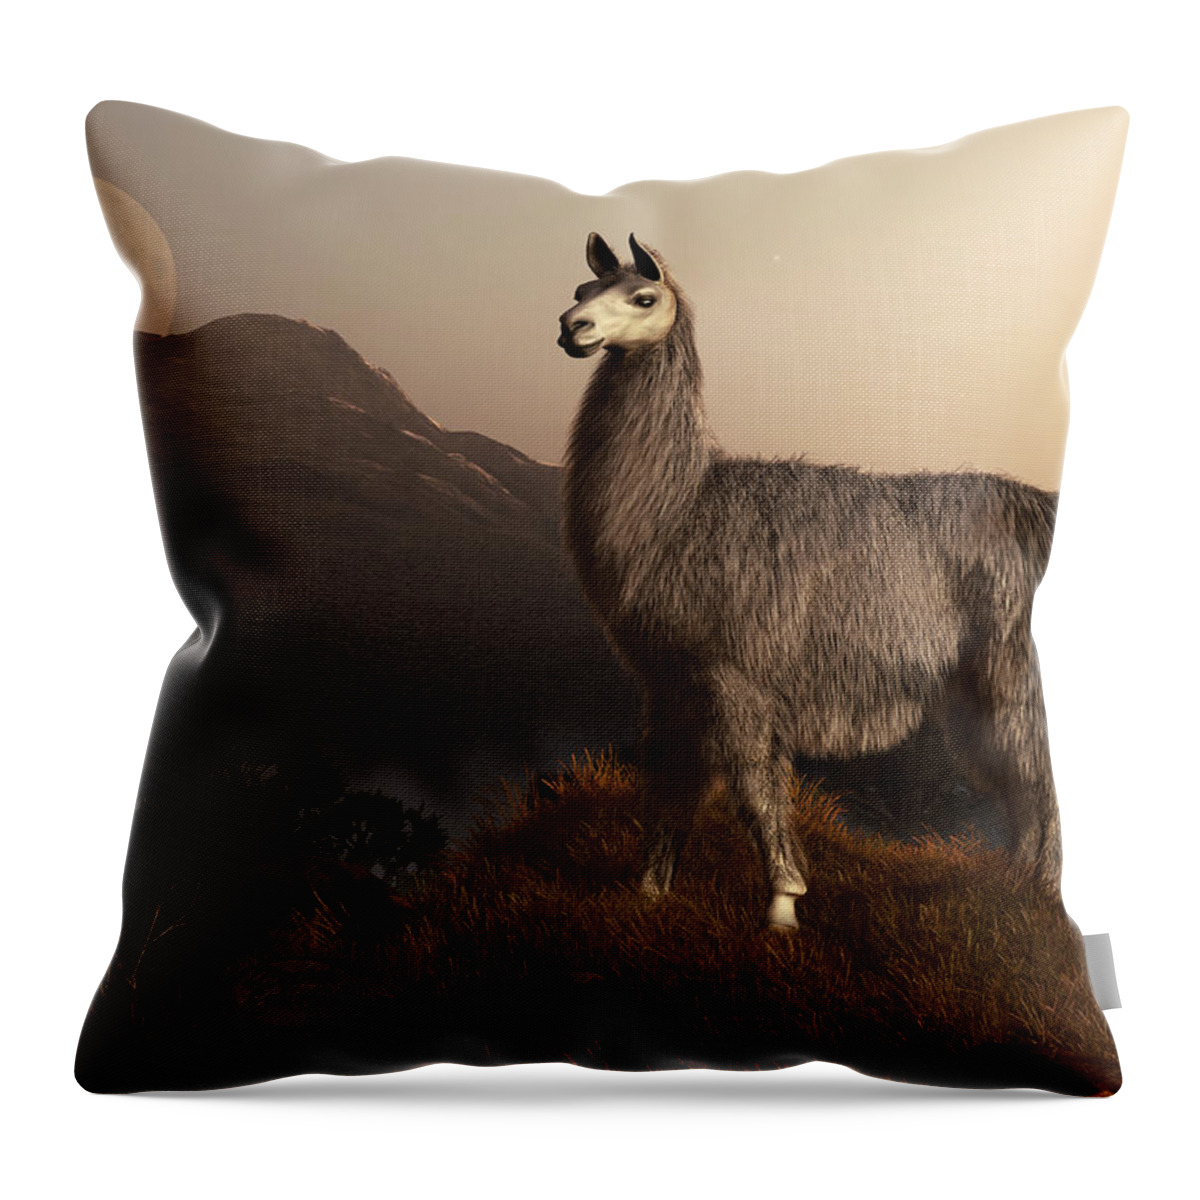 Llama Throw Pillow featuring the digital art Llama Dawn by Daniel Eskridge